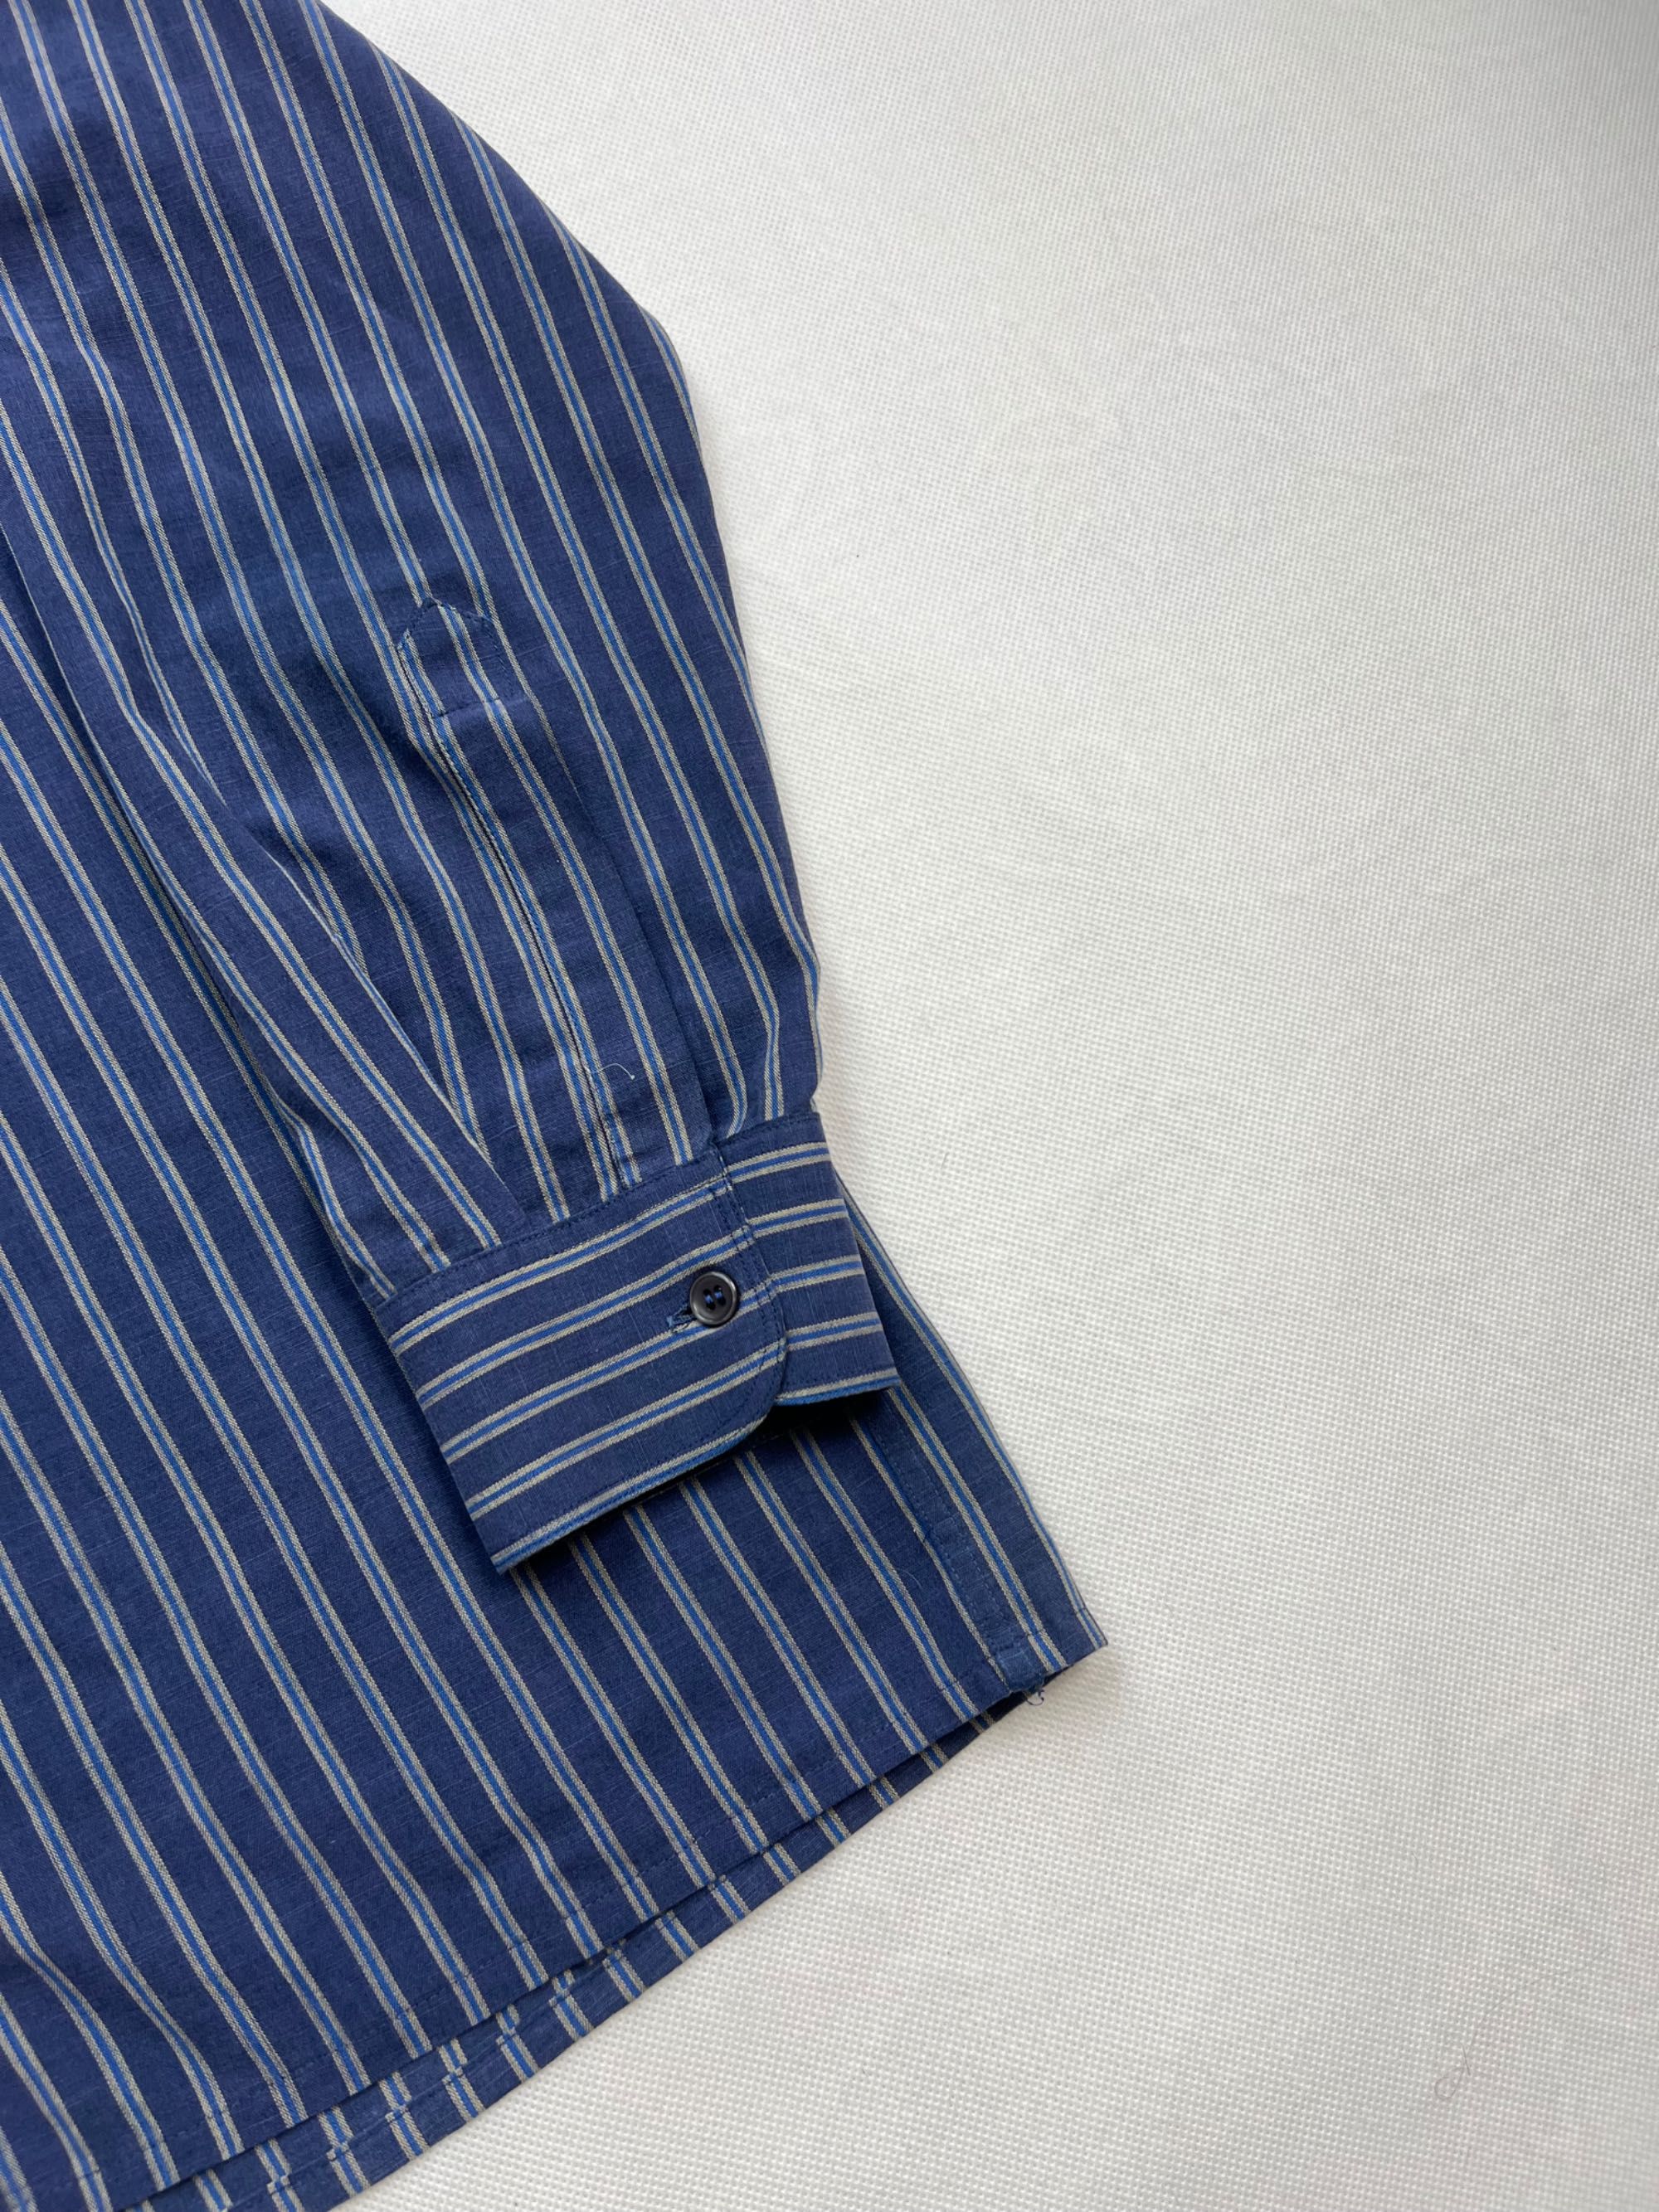 Rare Koszula Yves Saint Laurent Chemises vintage 80’s 90’s